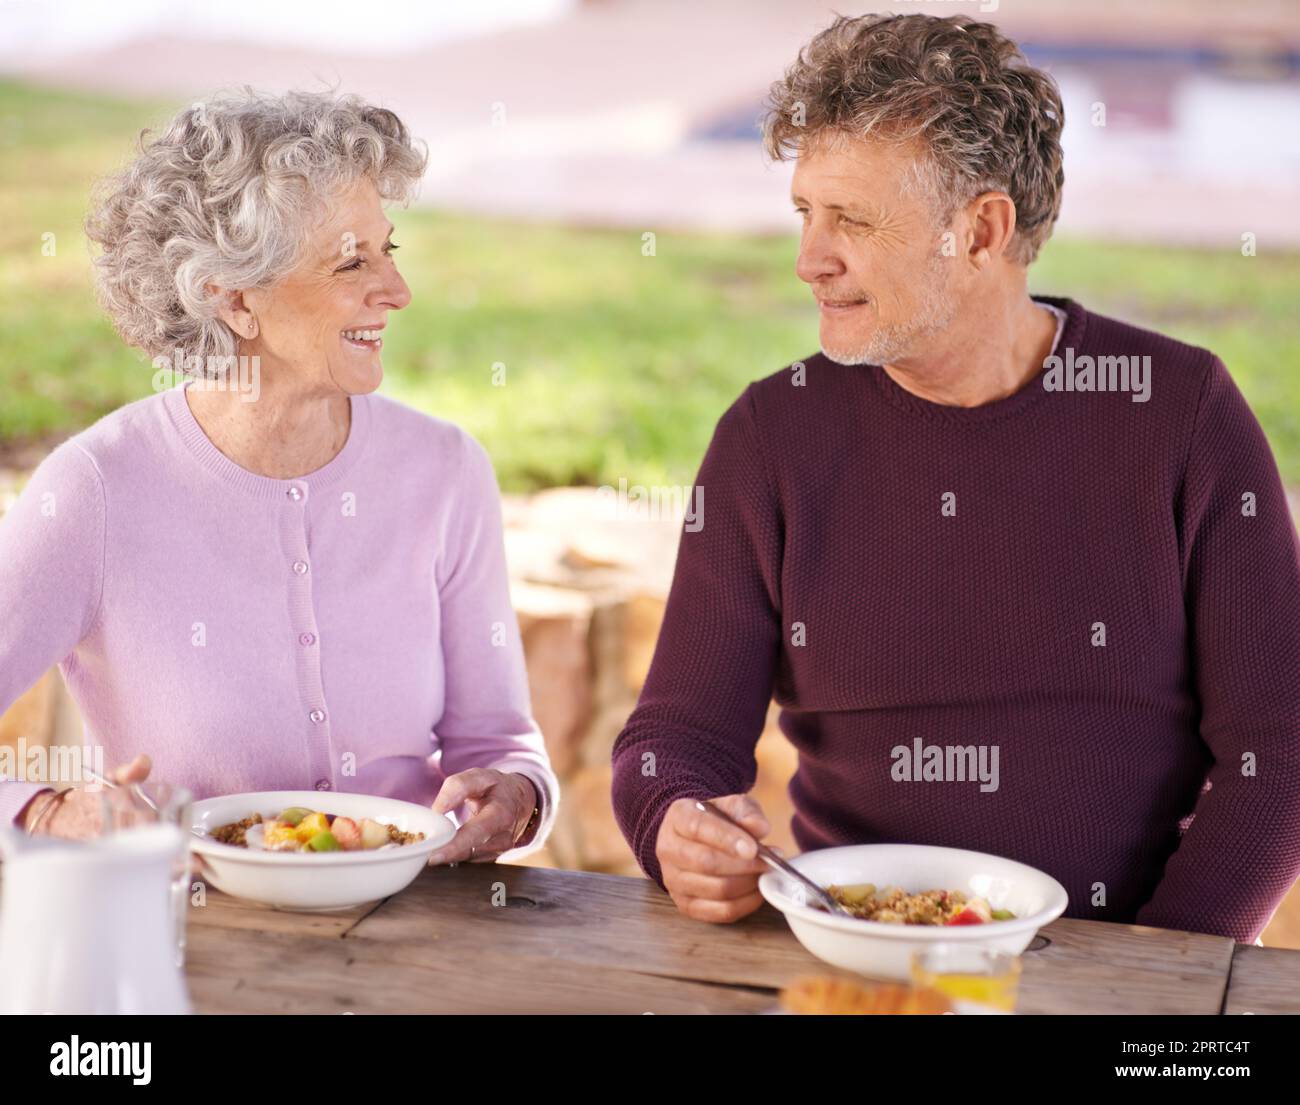 La colazione è un po' affettuosa, una coppia anziana che ha fatto colazione all'aperto. Foto Stock